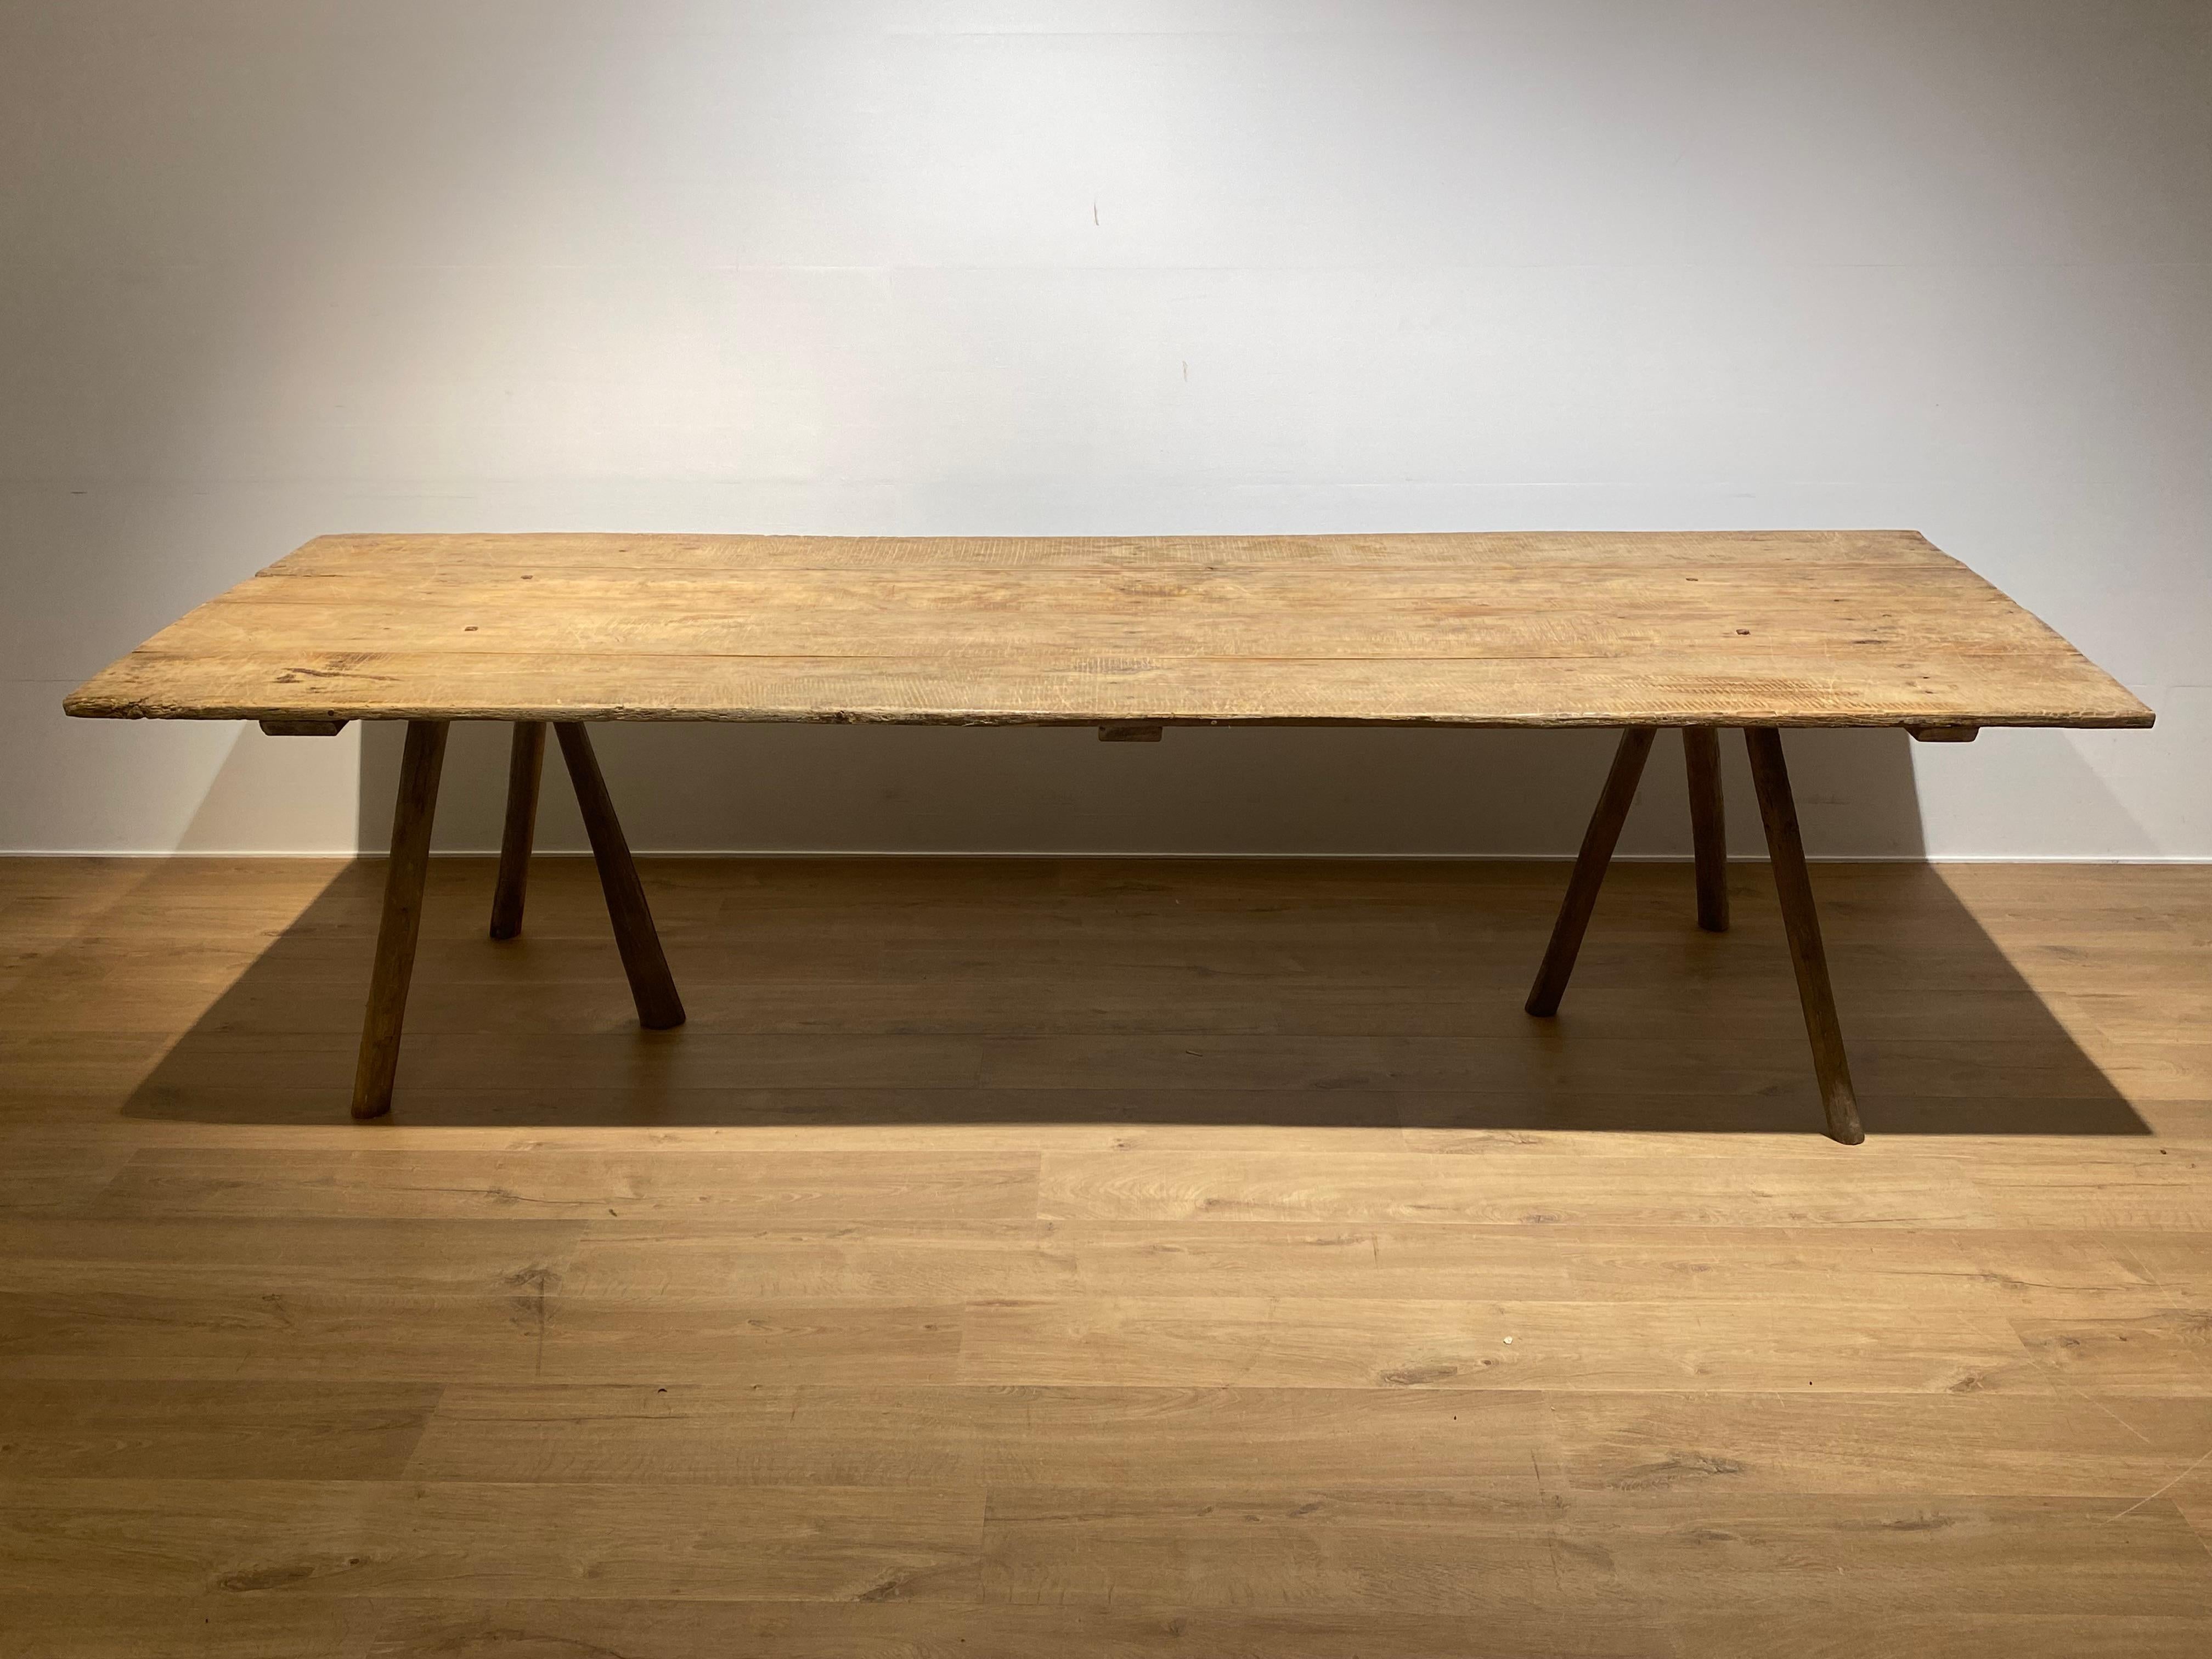 Eleganter französischer Arbeitstisch aus den französischen Weinbergen,
eine hölzerne Tischplatte, die auf 2 dreibeinigen Sockeln steht,
sonnengebleichtes Holz mit schöner Patina und Glanz, um 1960,
der Tisch kann für verschiedene Zwecke verwendet